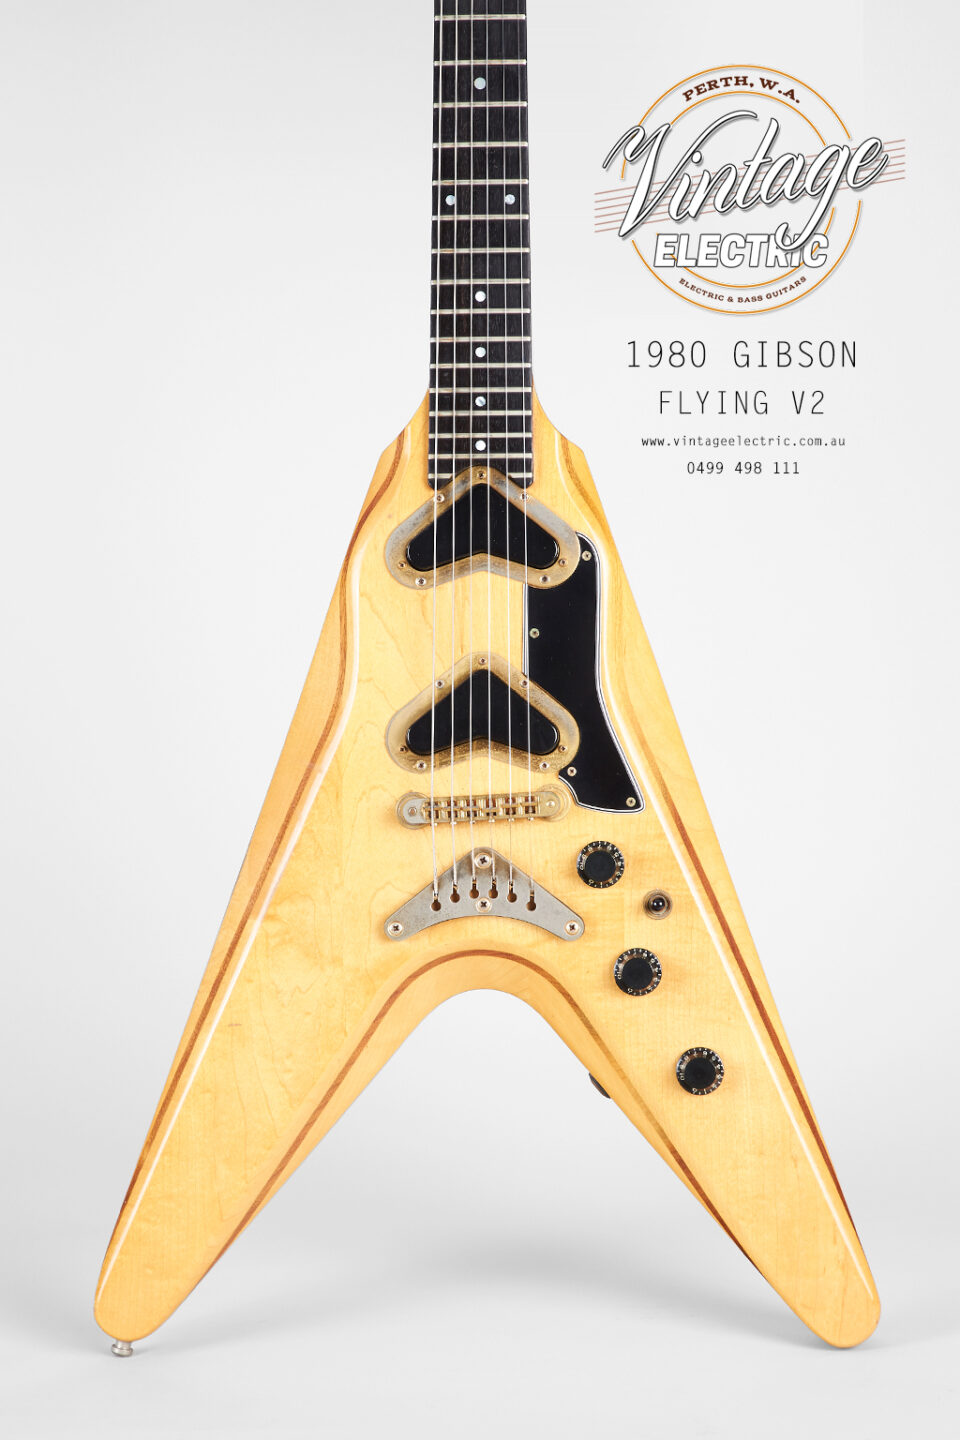 1980 Gibson Flying V2 Body